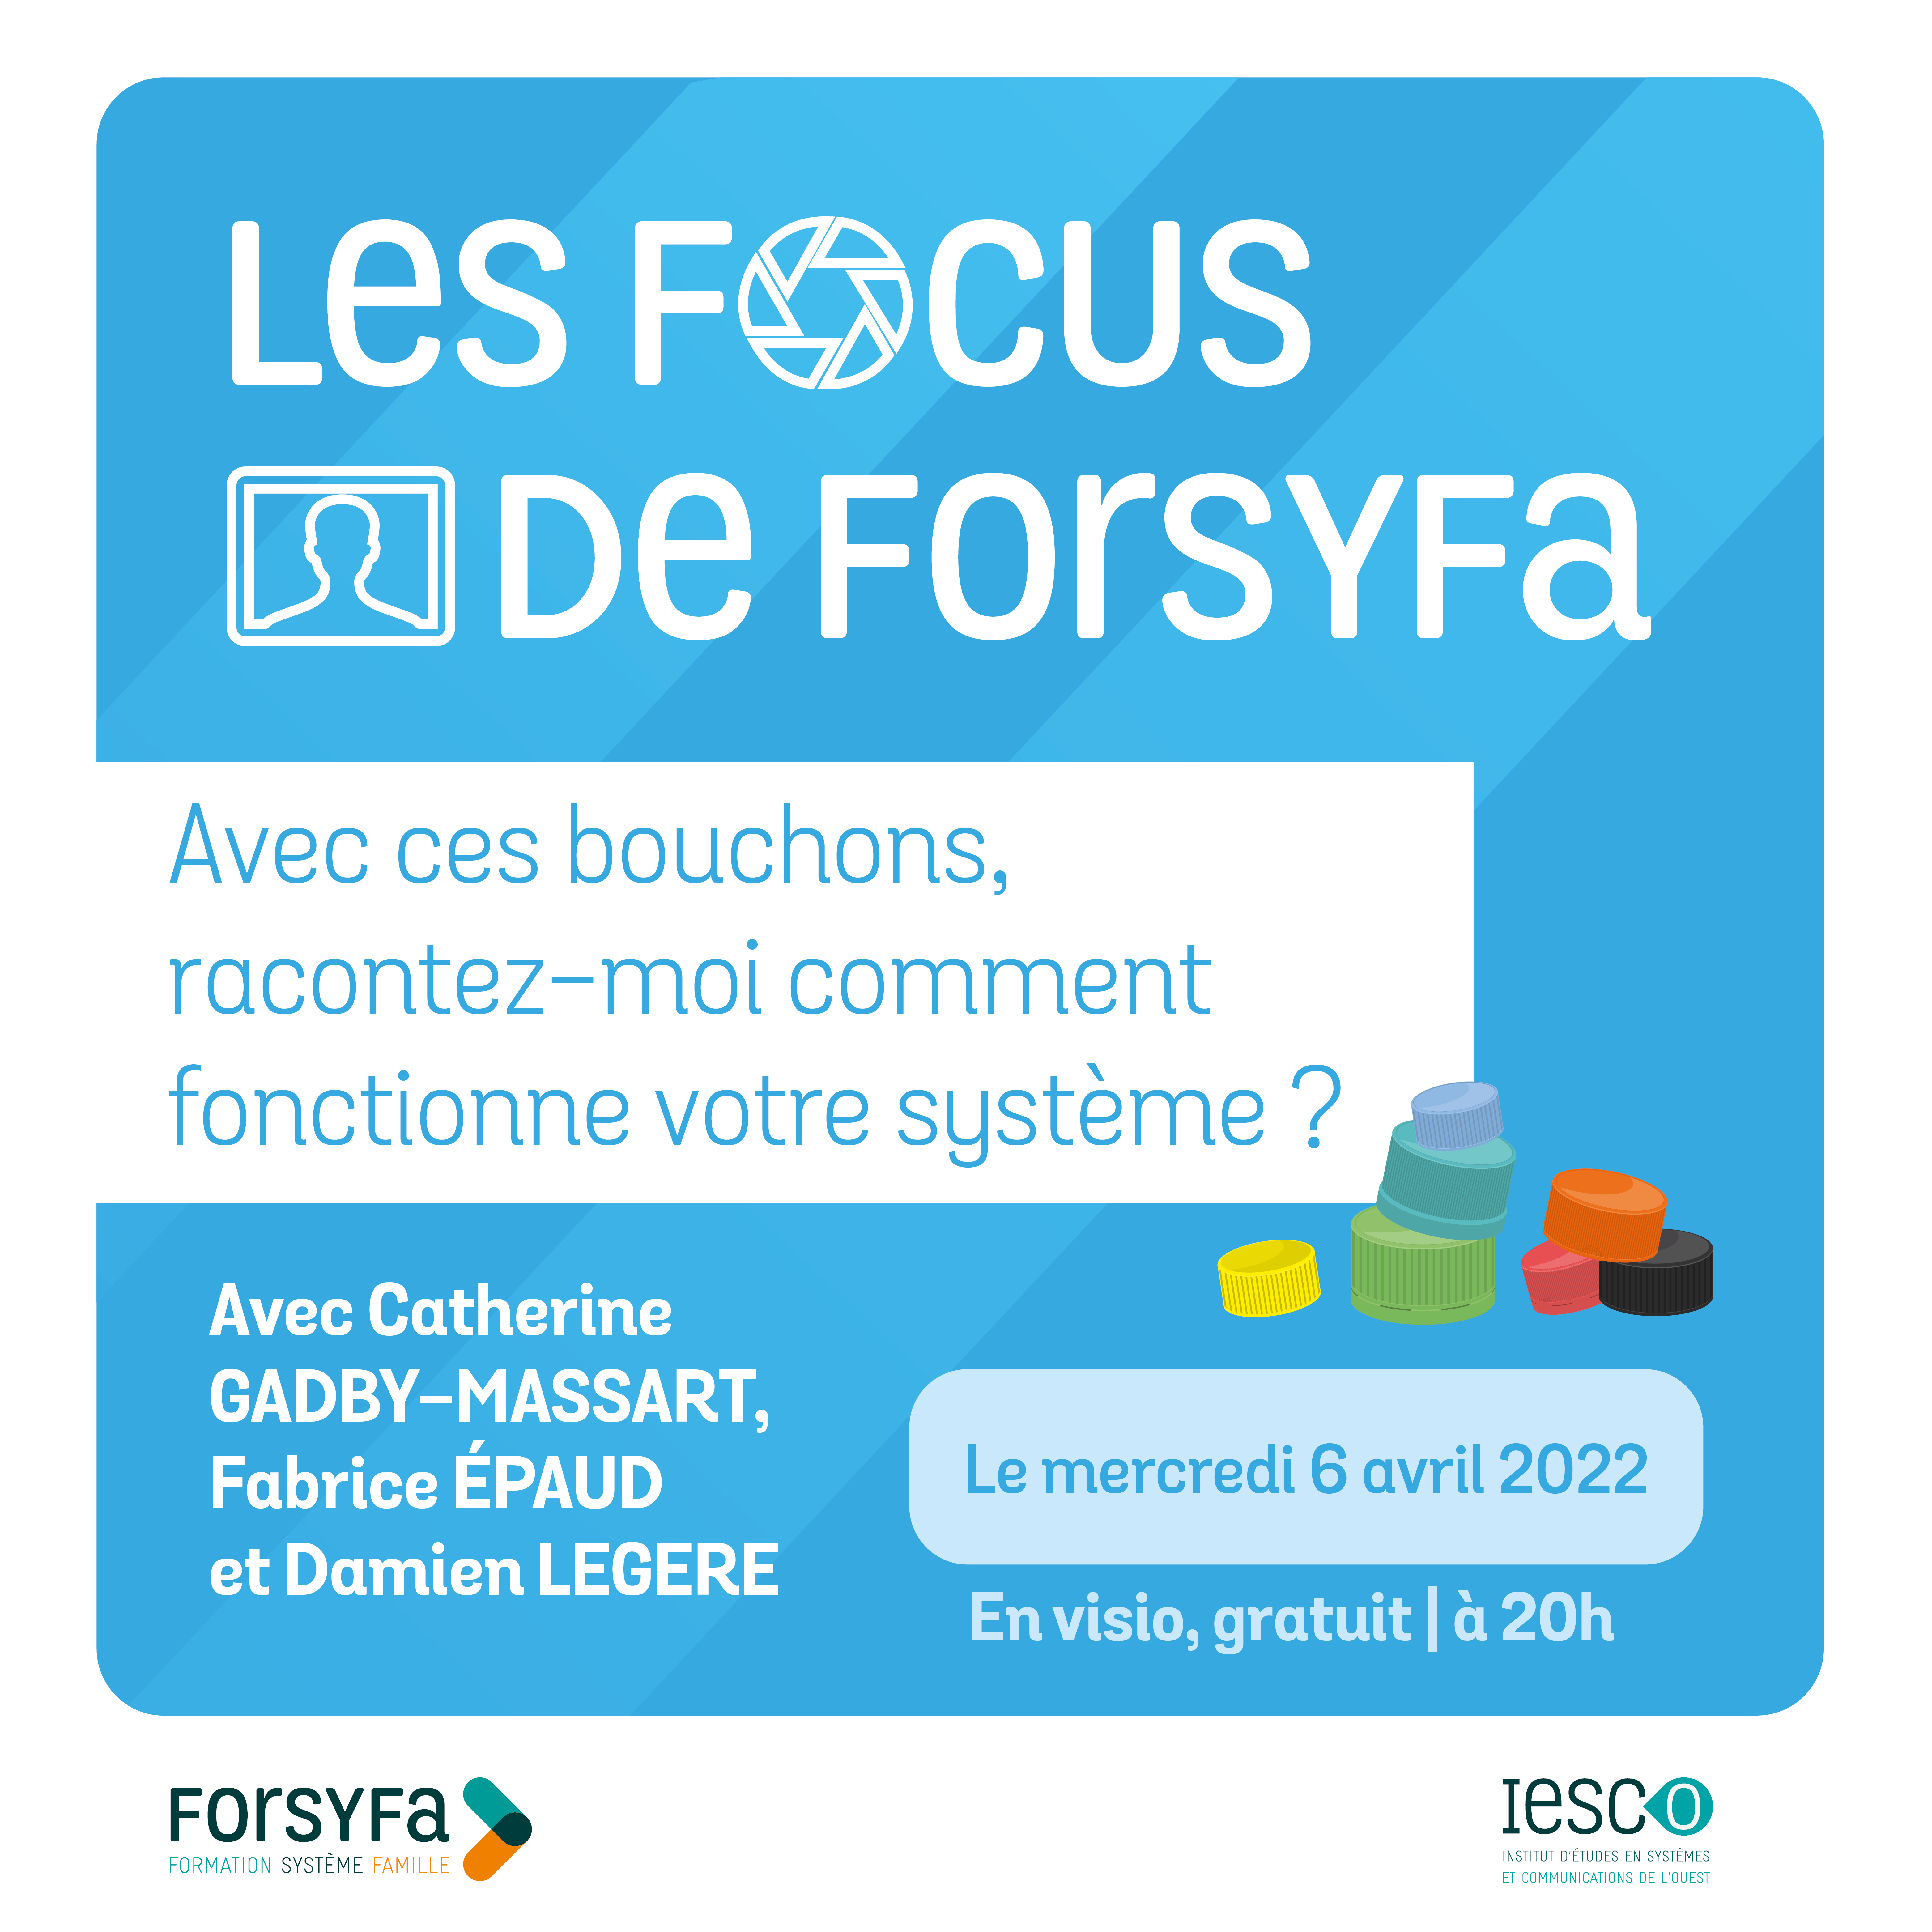 Les focus de Forsyfa | Les bouchons